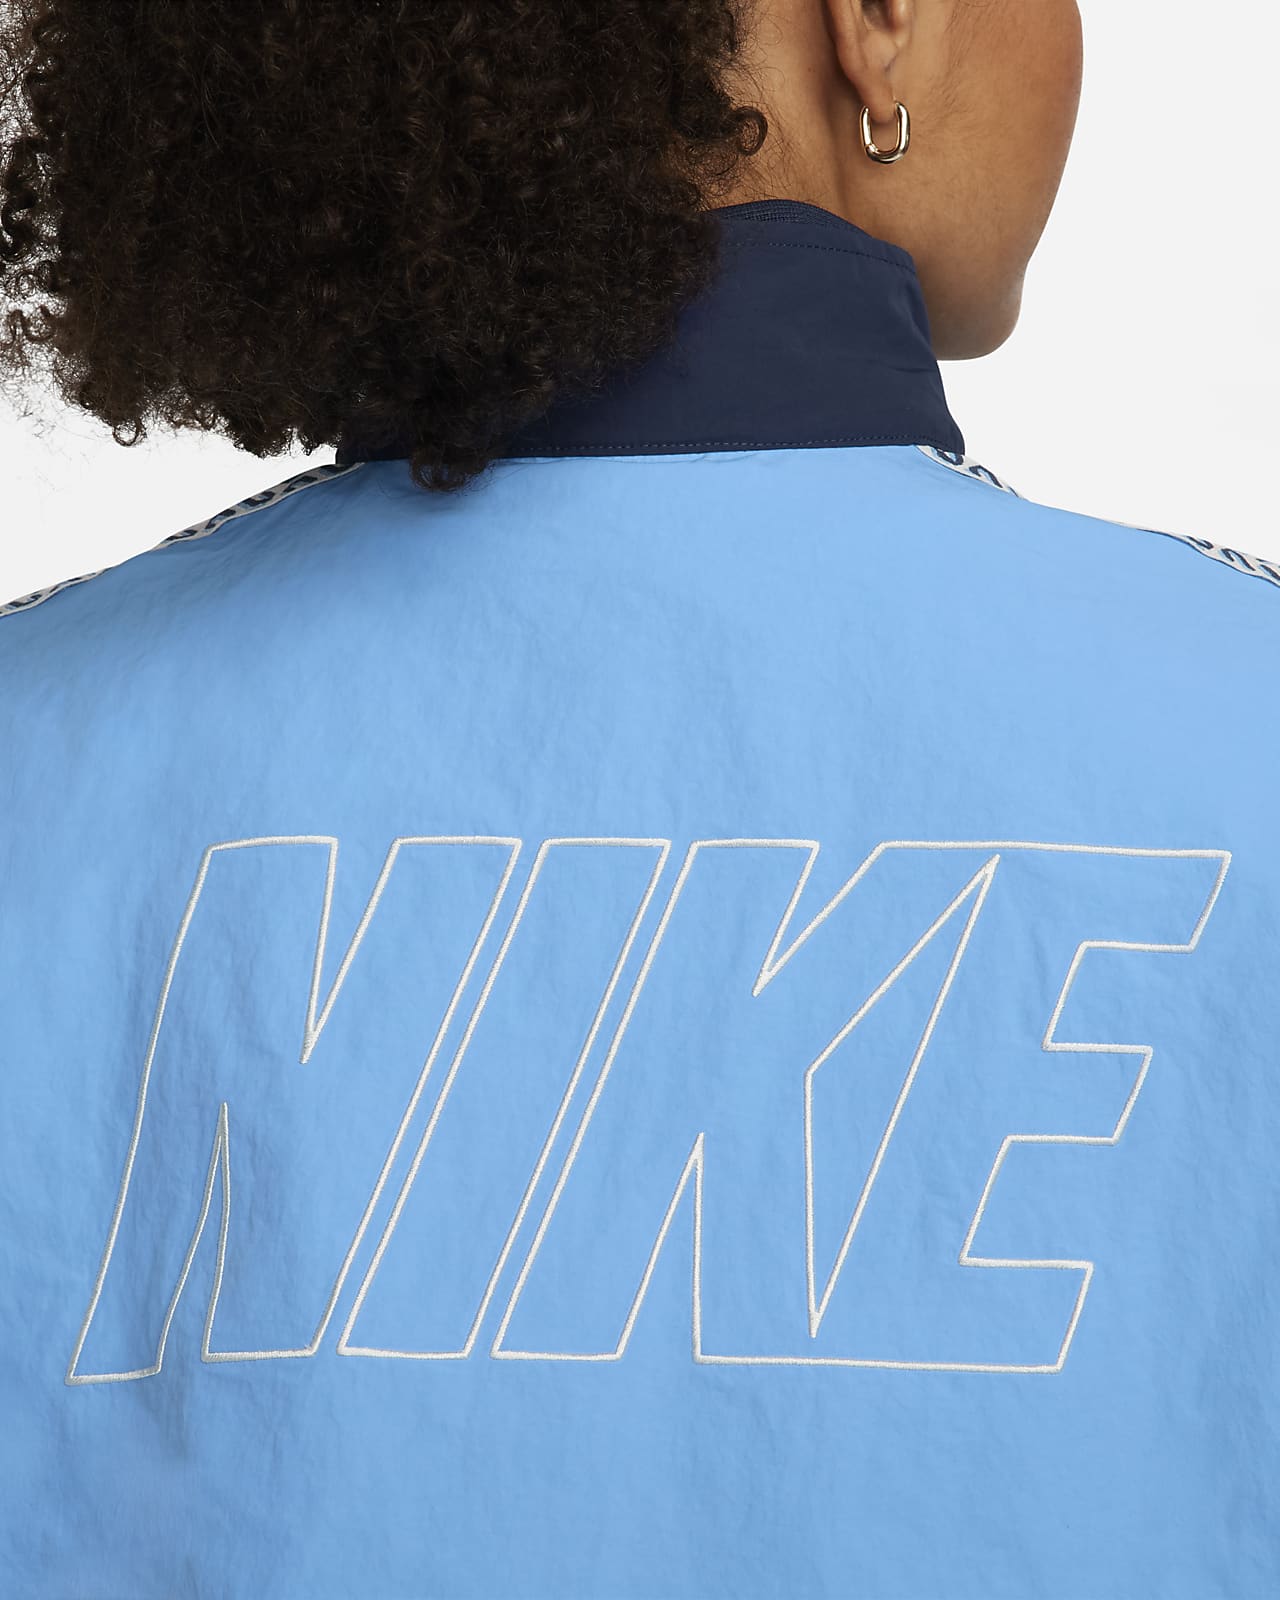 Nike Sportswear x Nike United Women's Oversized Woven Track Jacket.